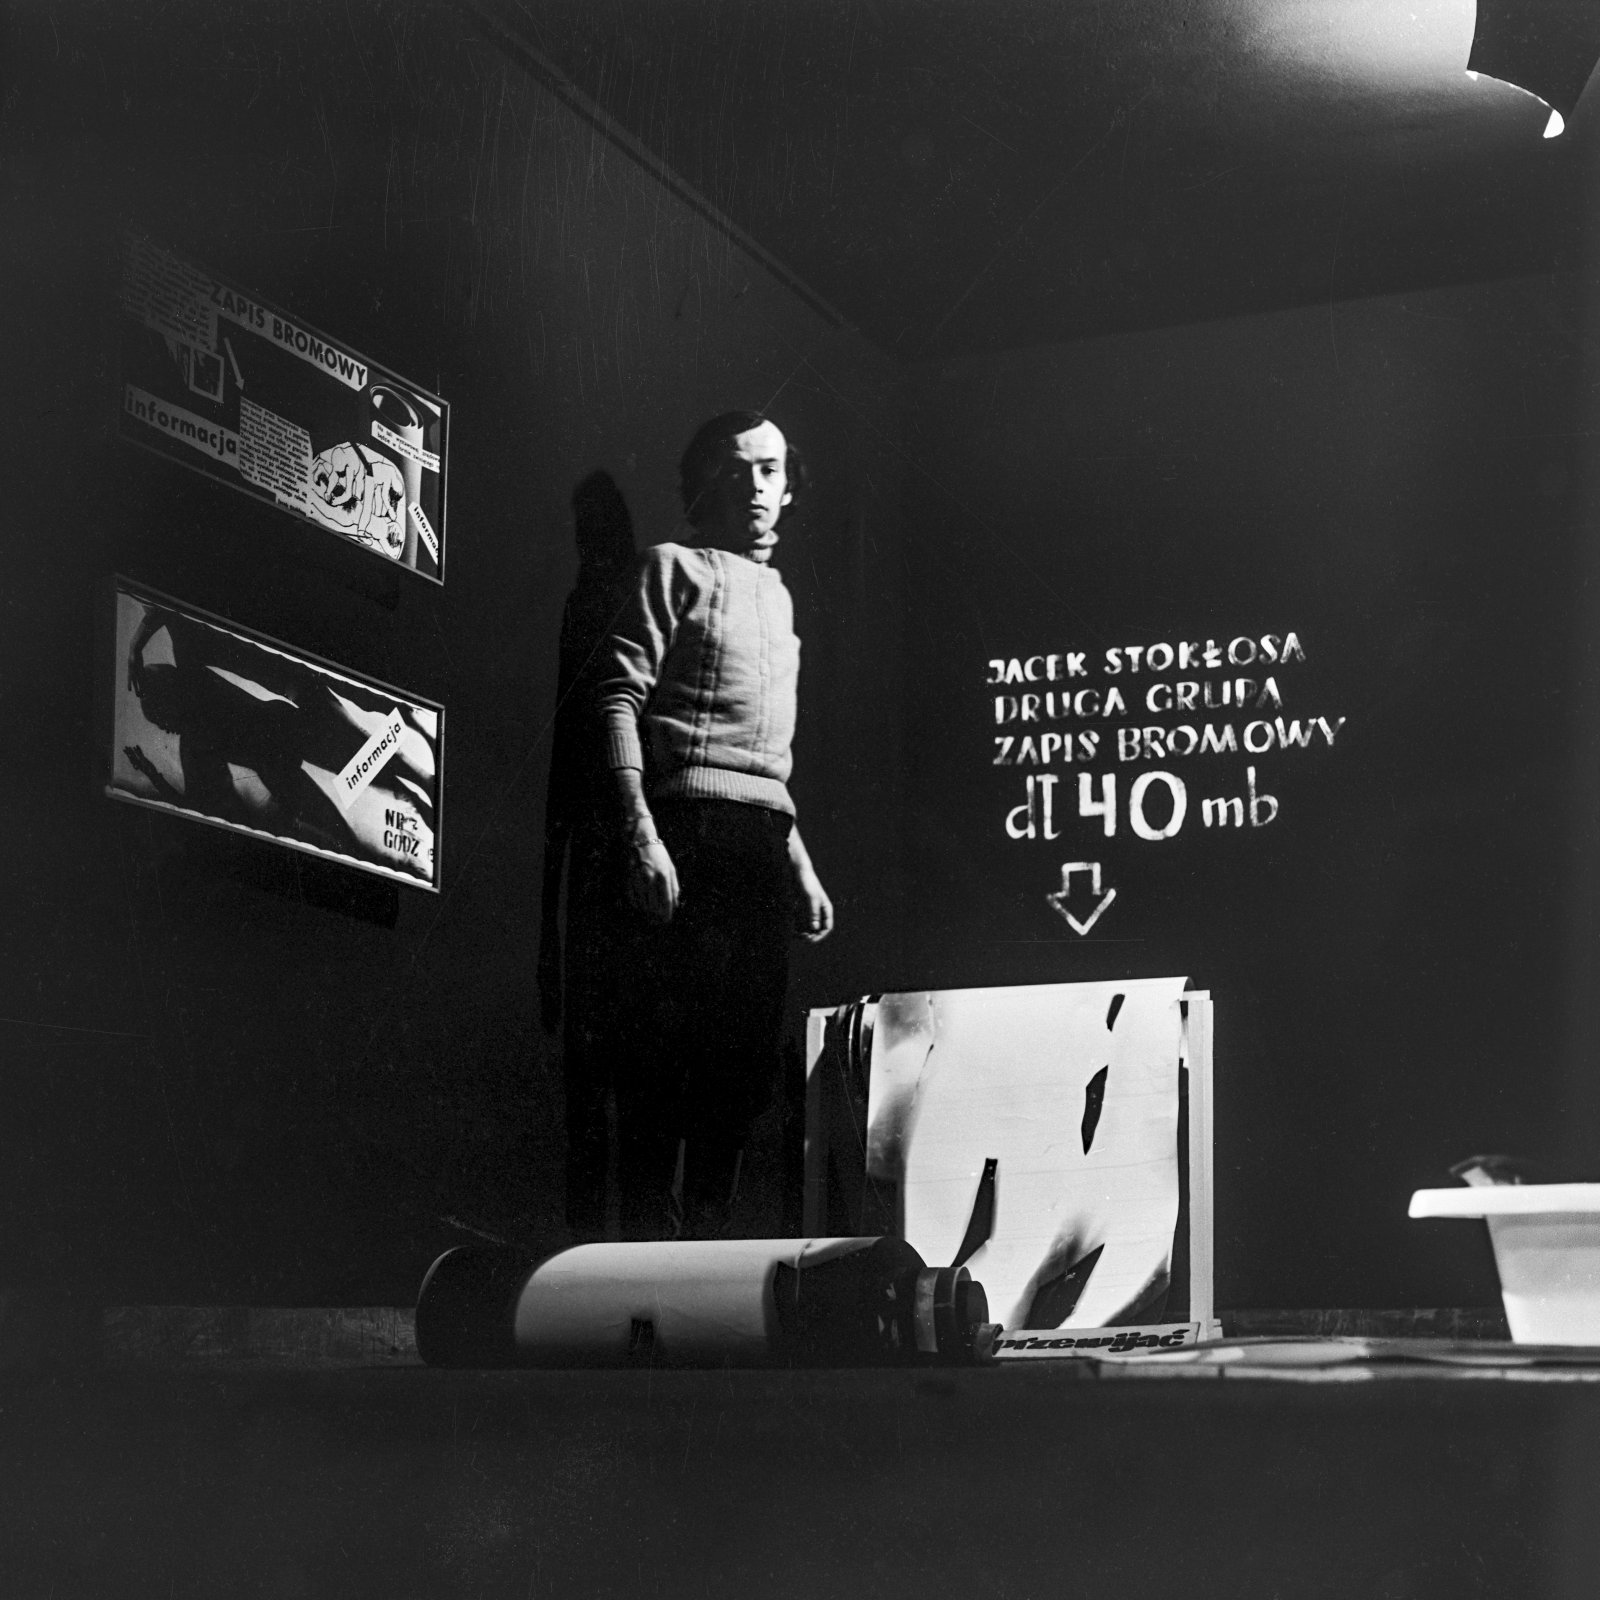 Zdjęcie mężczyzny w ciemnym pomieszczeniu, w tle napis Jacek Stokłosa Druga Grupa zapis bromowy